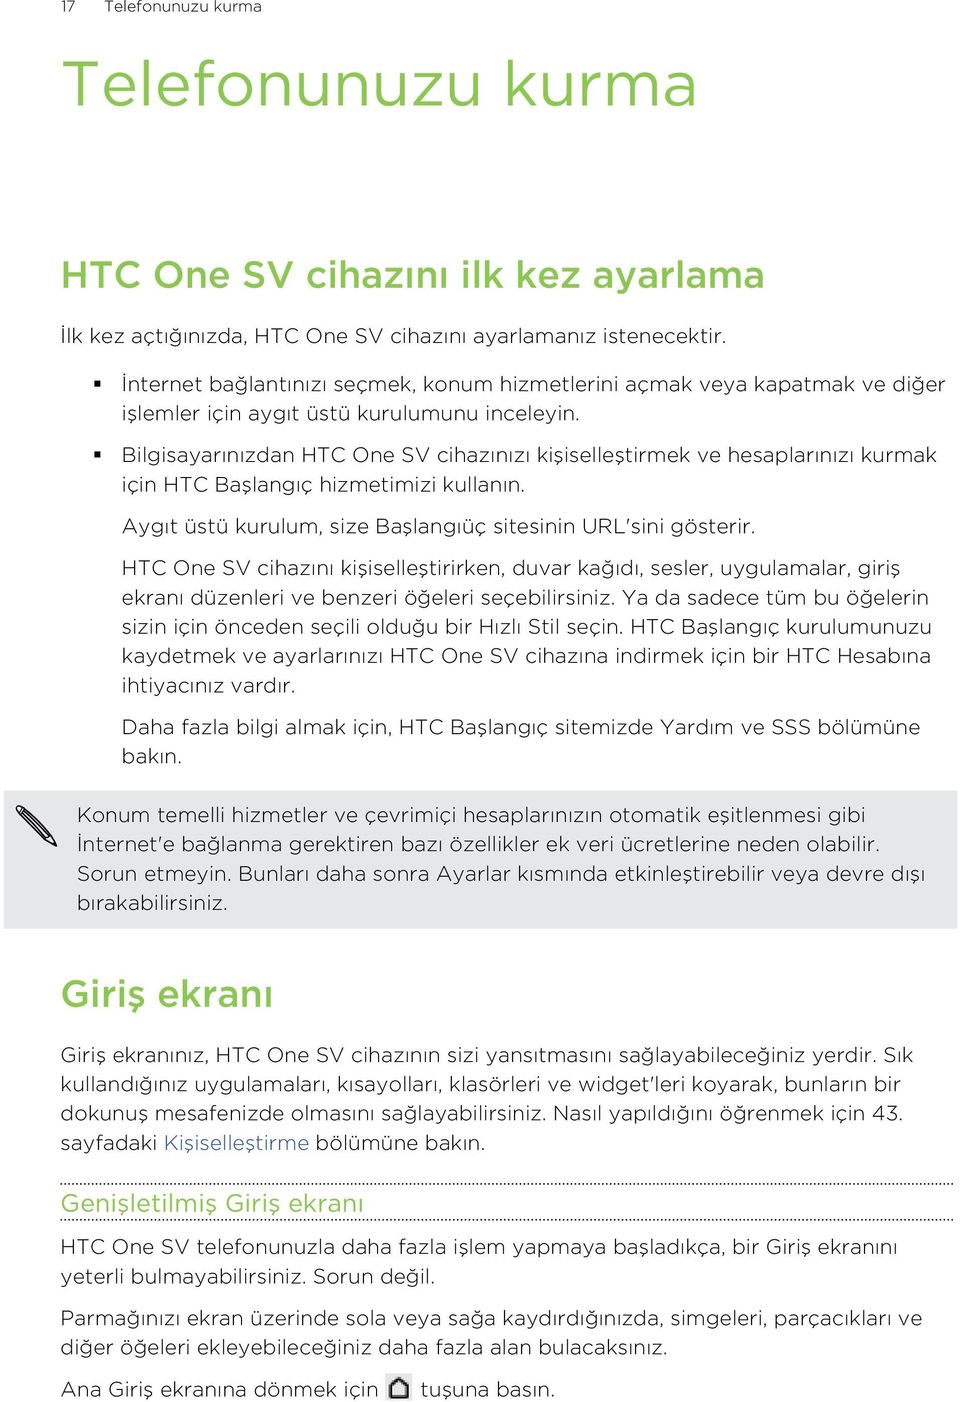 Bilgisayarınızdan HTC One SV cihazınızı kişiselleştirmek ve hesaplarınızı kurmak için HTC Başlangıç hizmetimizi kullanın. Aygıt üstü kurulum, size Başlangıüç sitesinin URL'sini gösterir.